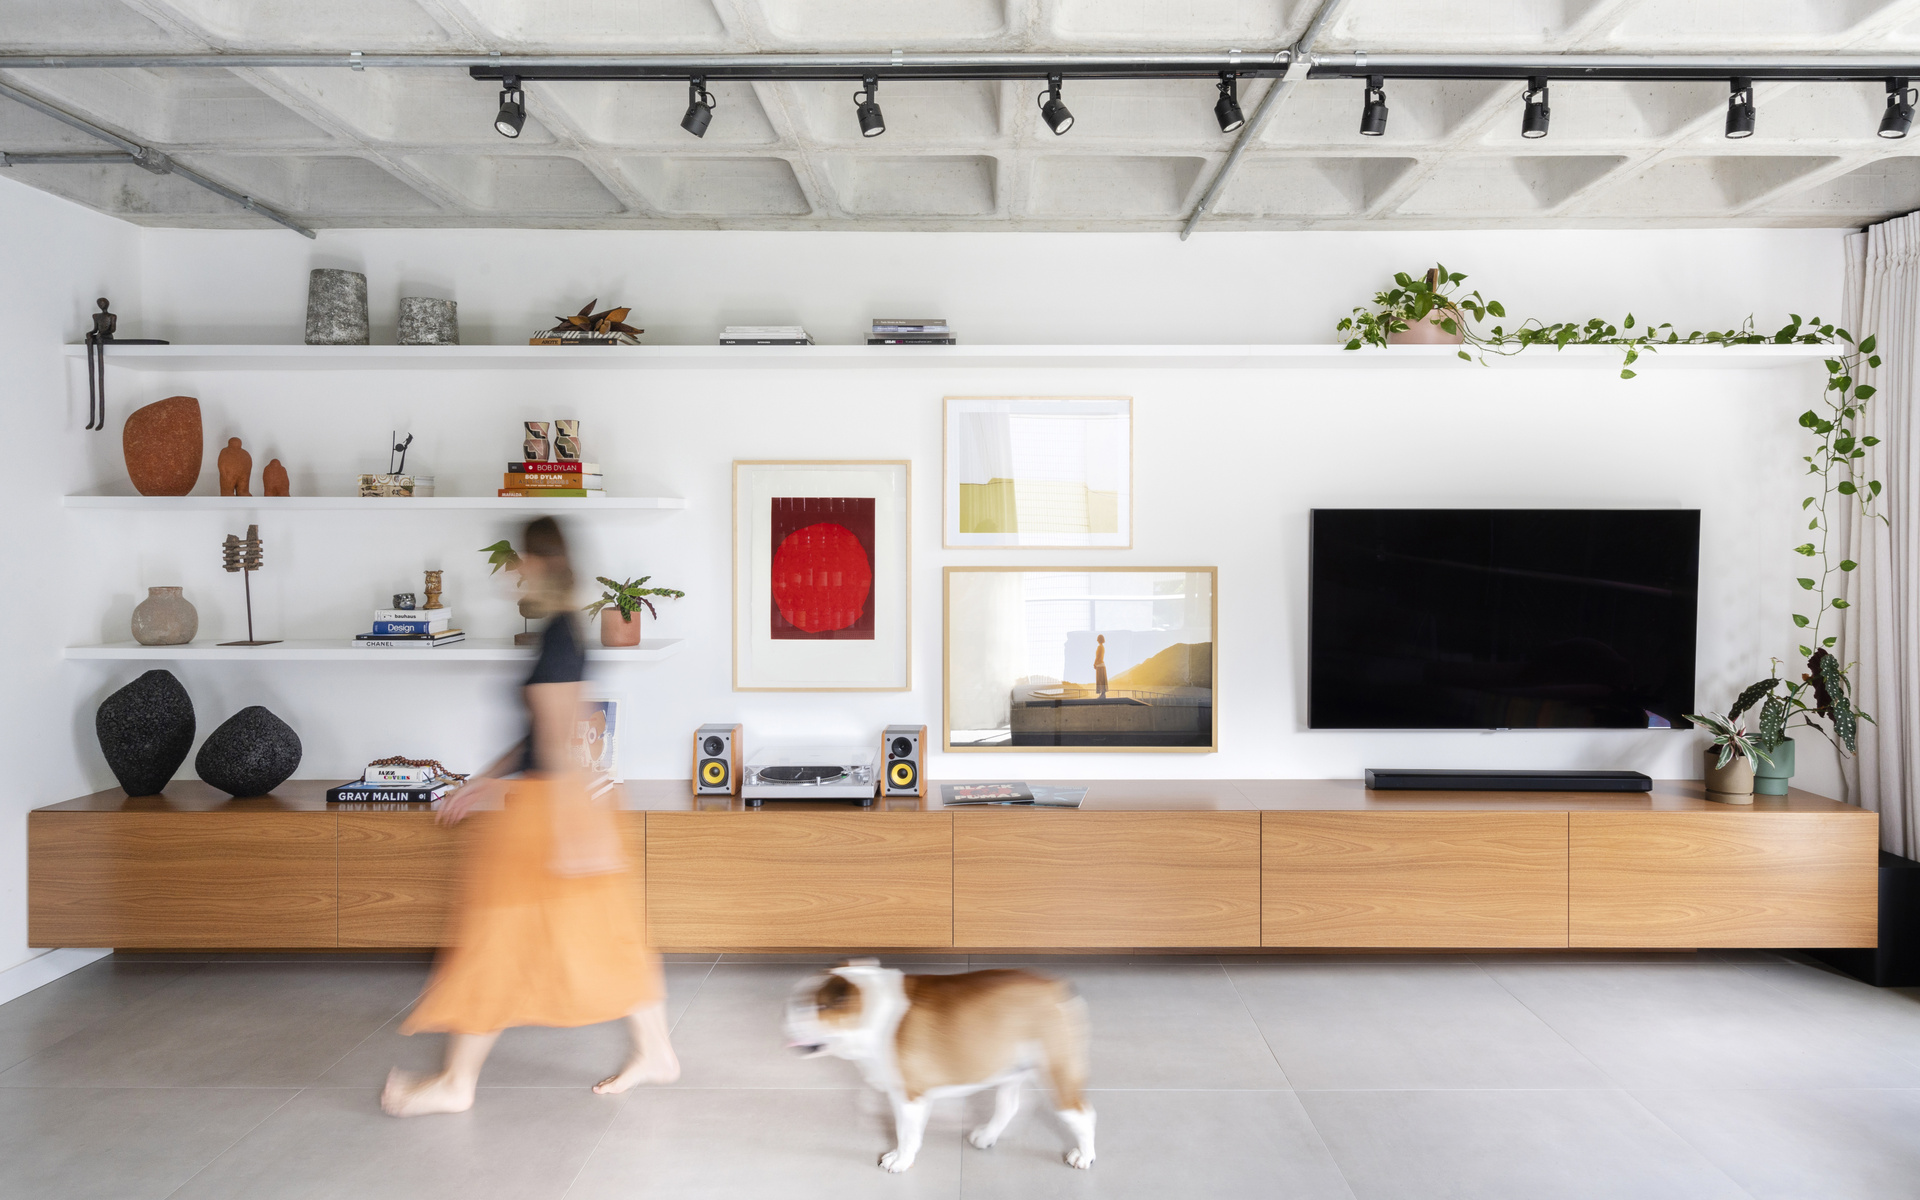 Sala de estar com estante, quadros na parede, TV e um rack em madeira. Uma mulher e um cachorro passam à frente